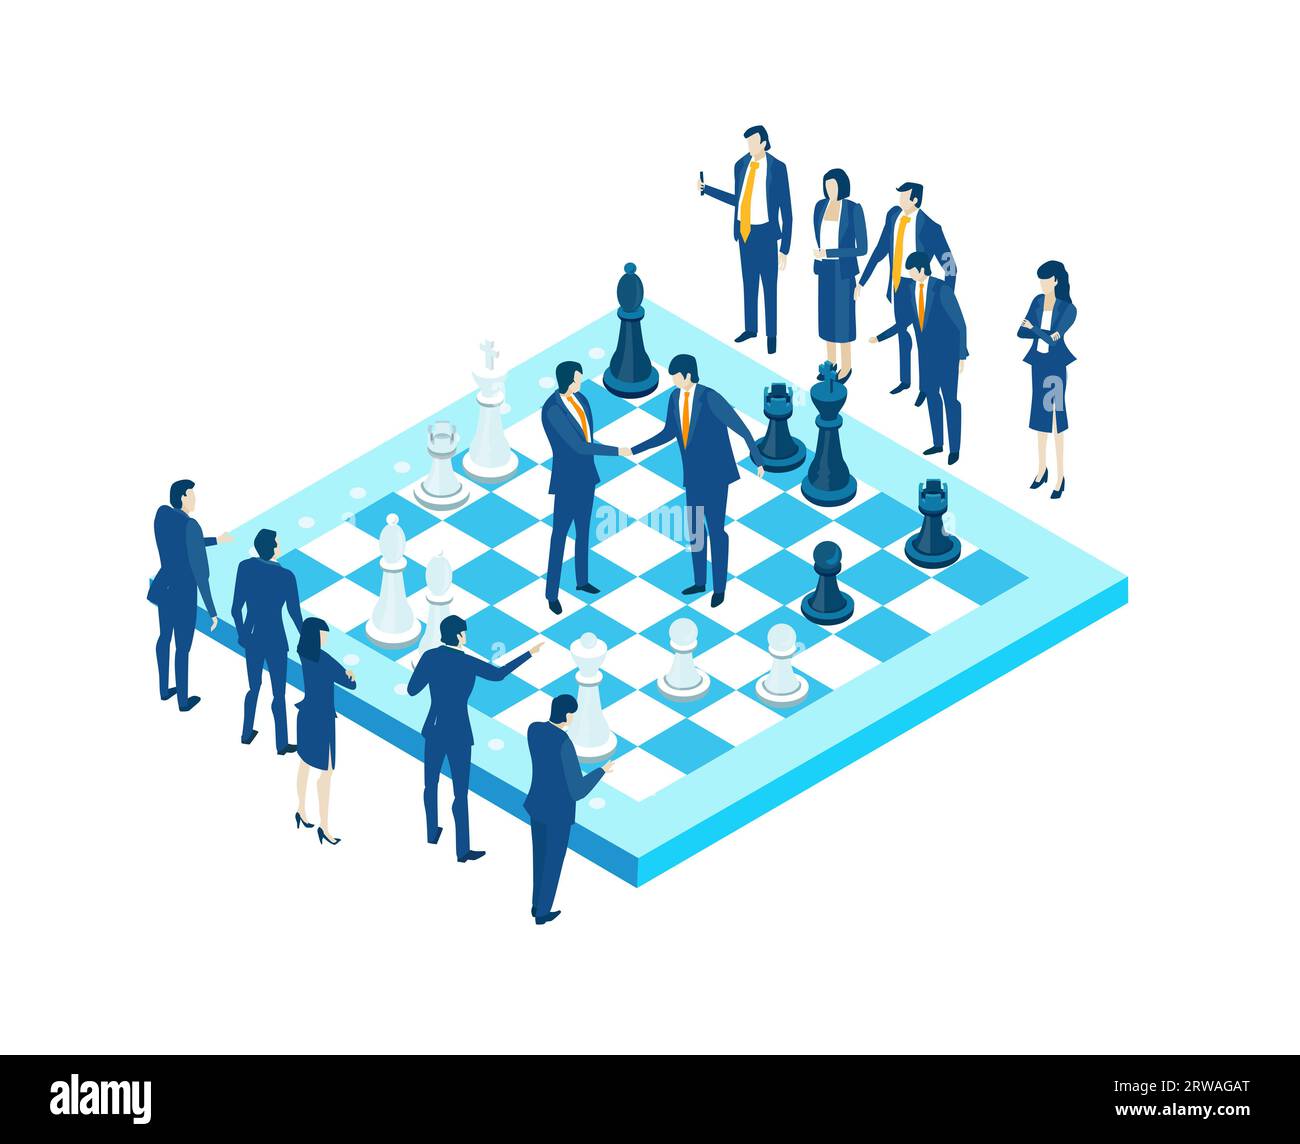 Hommes d'affaires jouant à un jeu d'échecs. Compétition, travail d'équipe, illustration isométrique du concept gagnant Banque D'Images